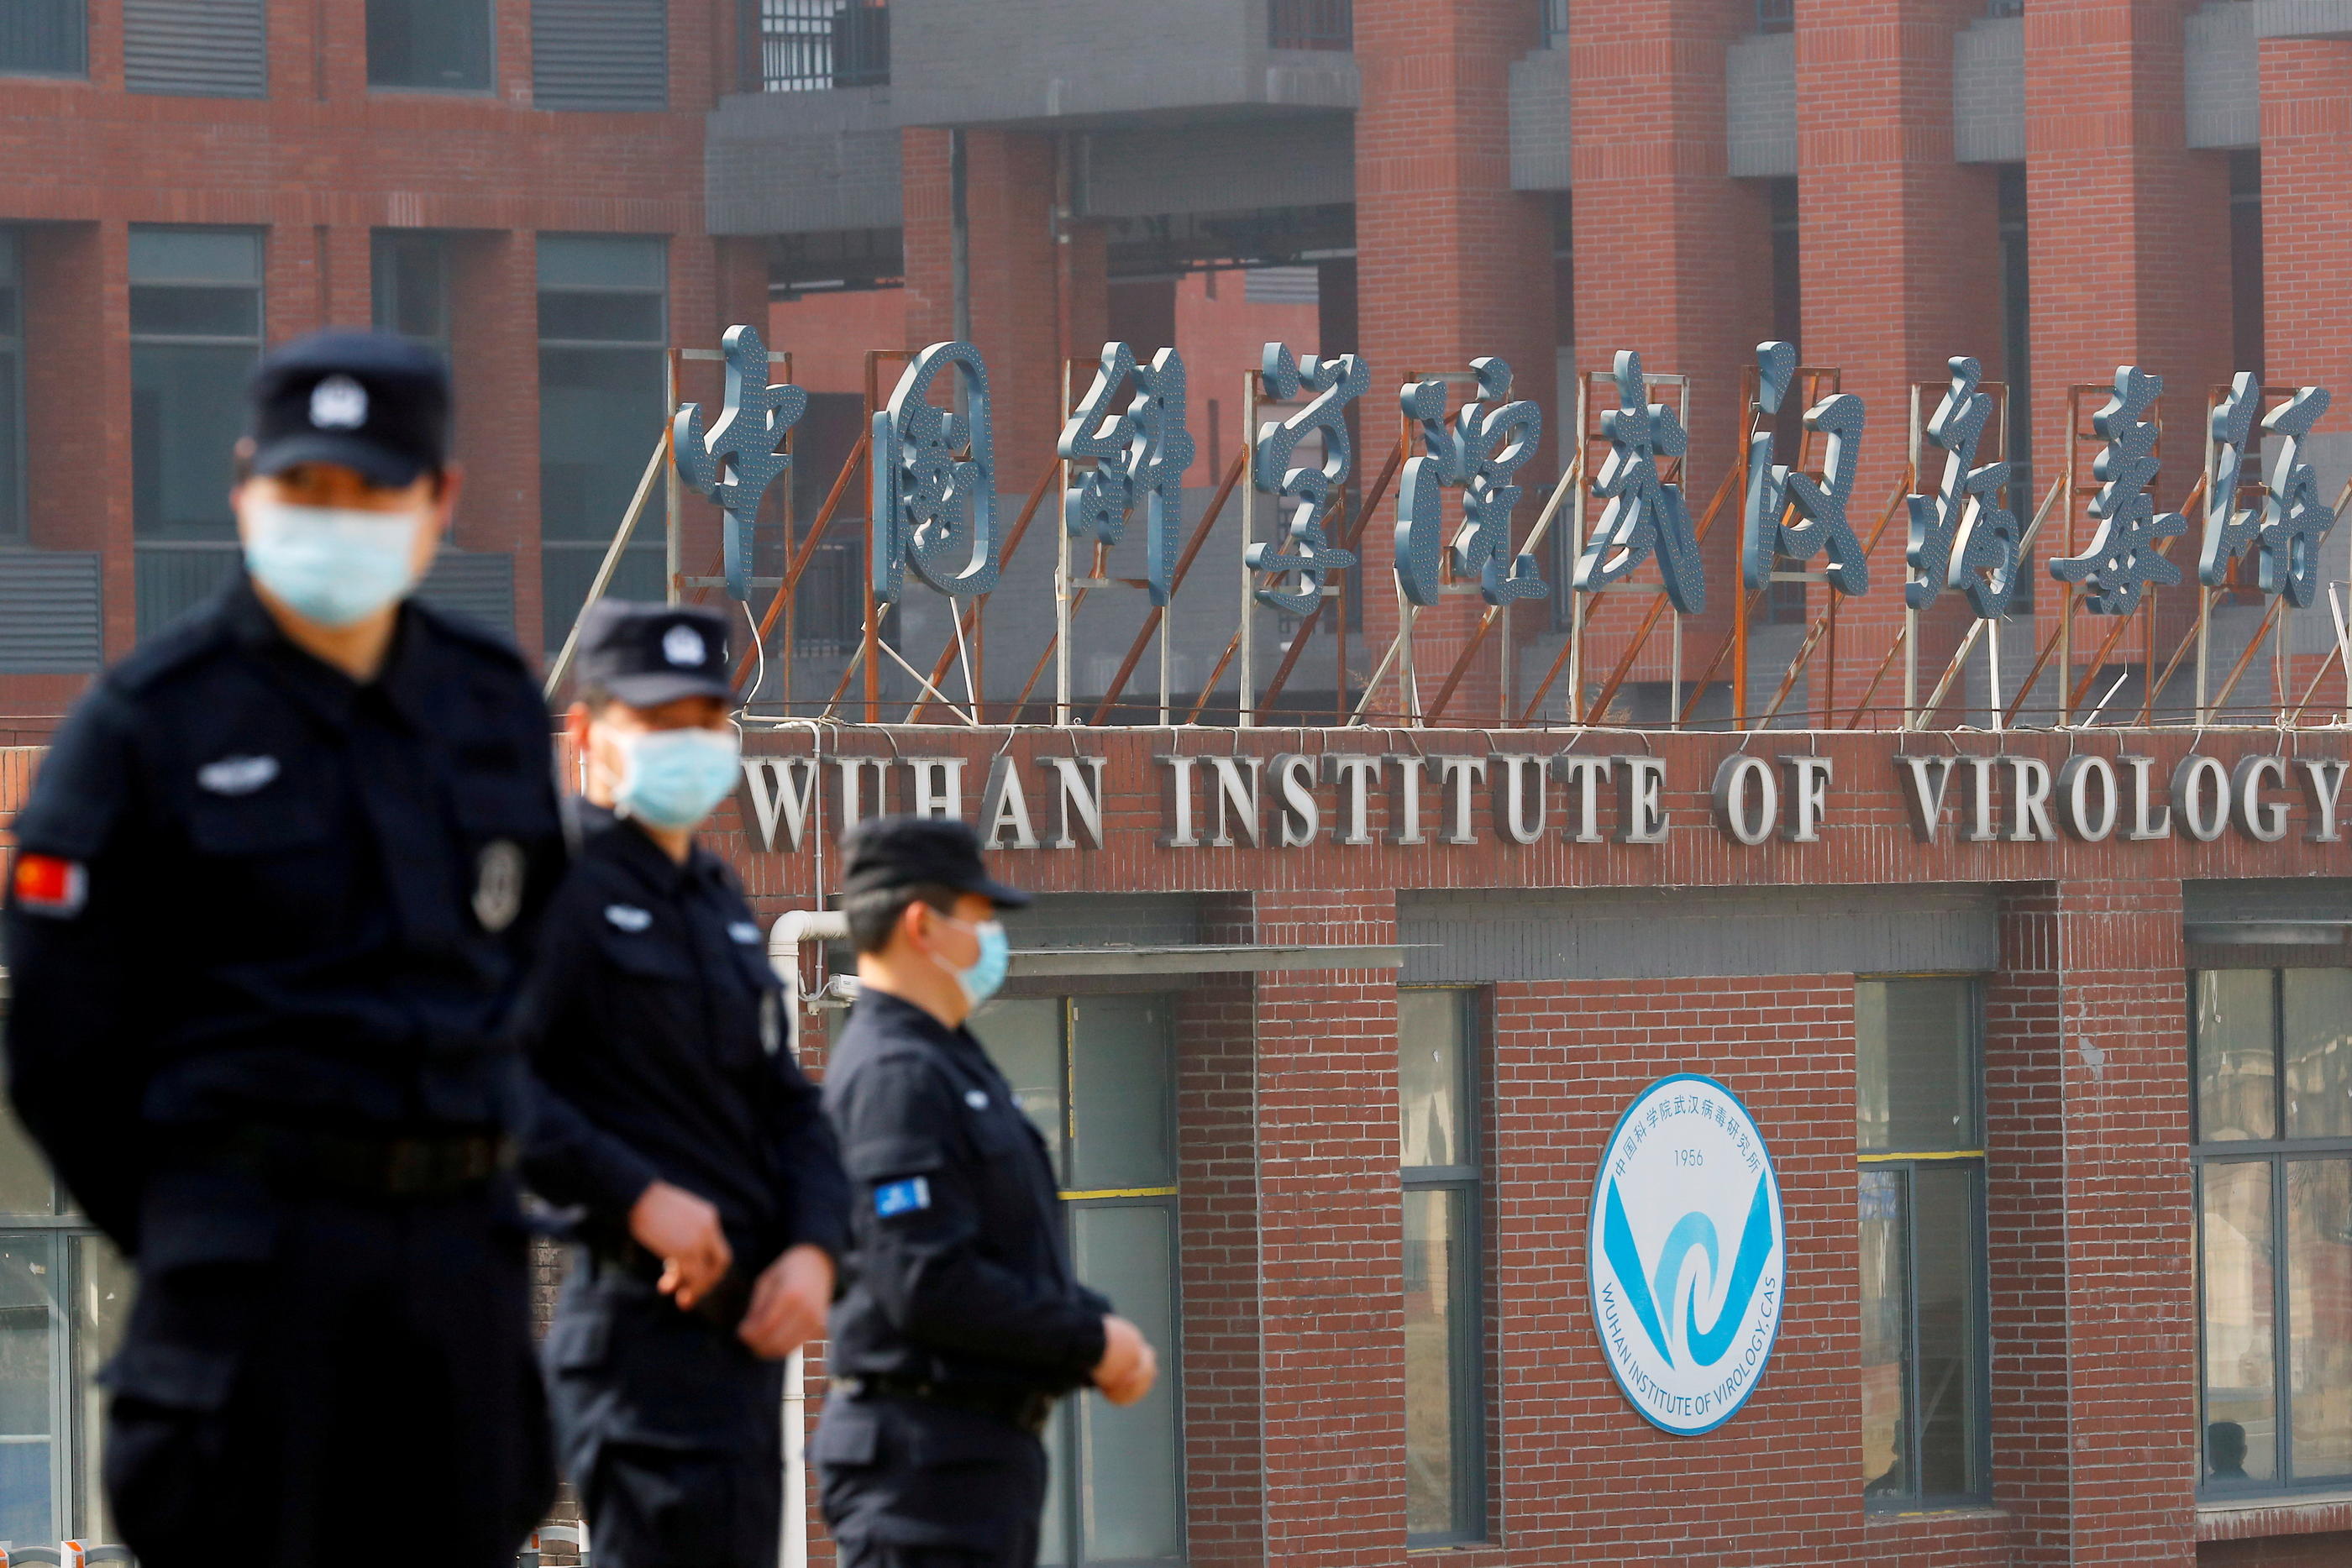 Le personnel de sécurité surveille les abords de l'Institut de virologie de Wuhan lors de la visite de l'équipe de l'Organisation mondiale de la santé chargée d'enquêter sur les origines du Covid, le 3 février 2021. REUTERS/Thomas Peter